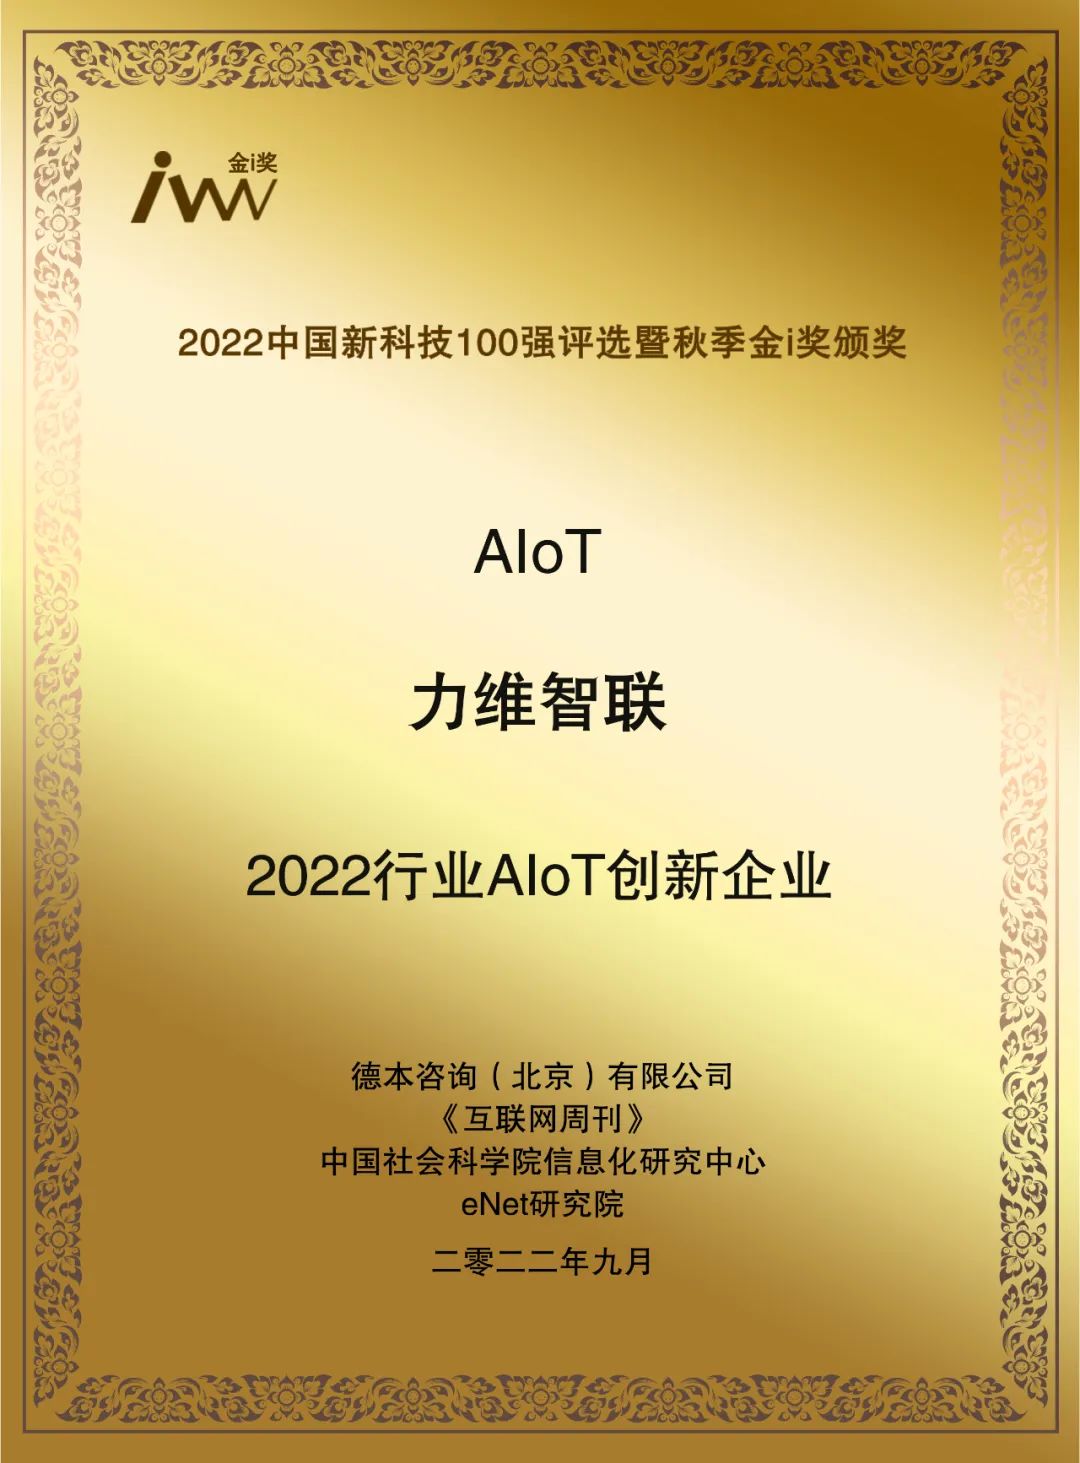 深耕AIoT | 力维智联获评“2022行业AIoT创新企业”